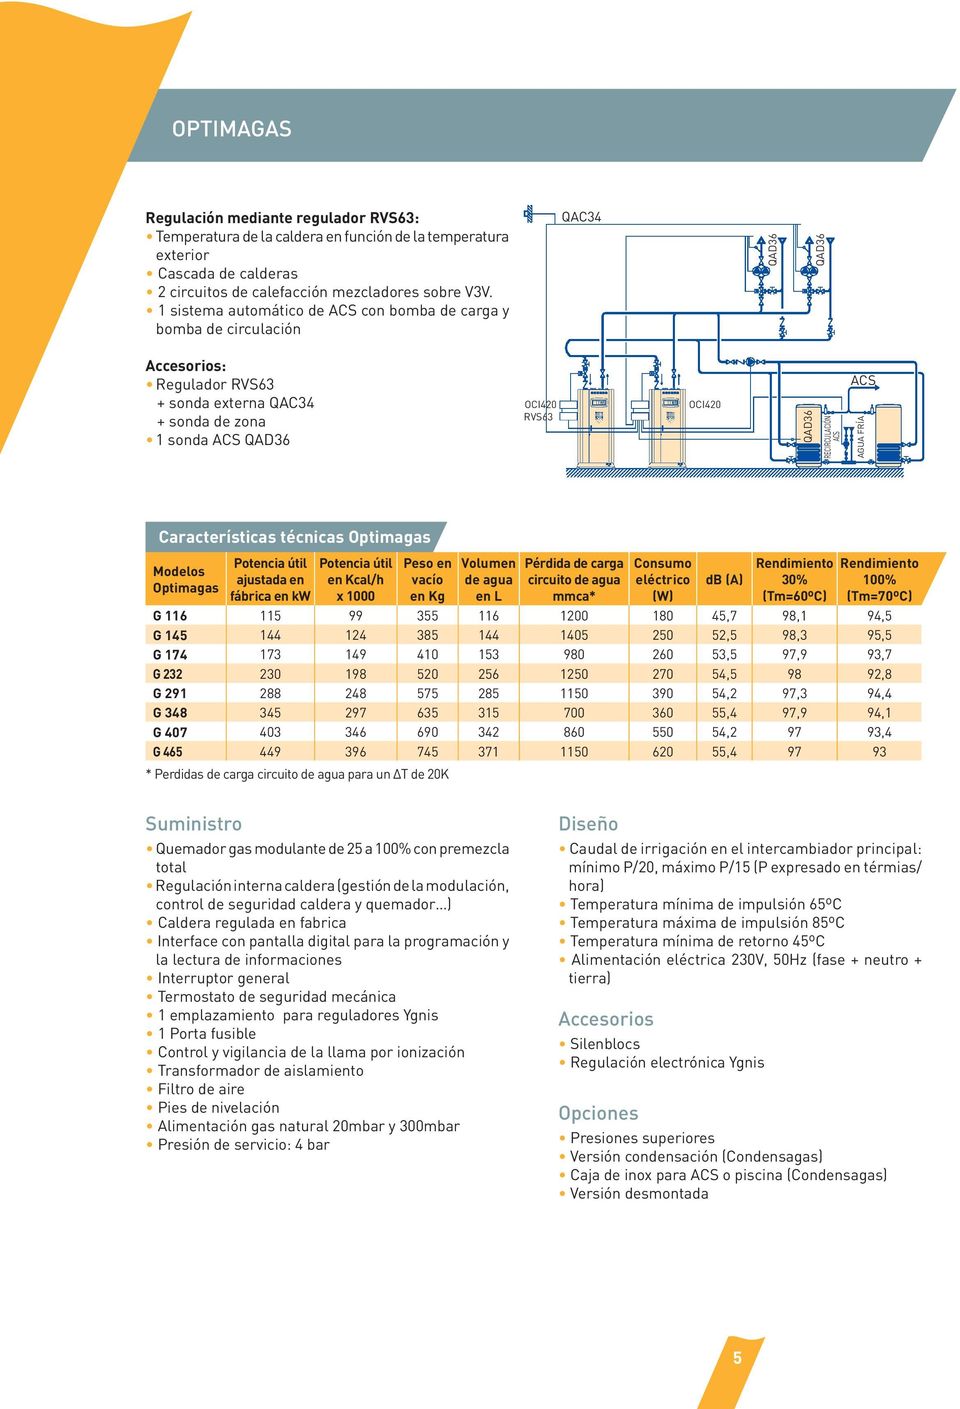 AGUA FRÍA Características técnicas Optimagas Modelos Optimagas Potencia útil ajustada en fábrica en kw Potencia útil en Kcal/h x 1000 Peso en vacío en Kg Volumen de agua en L Pérdida de carga